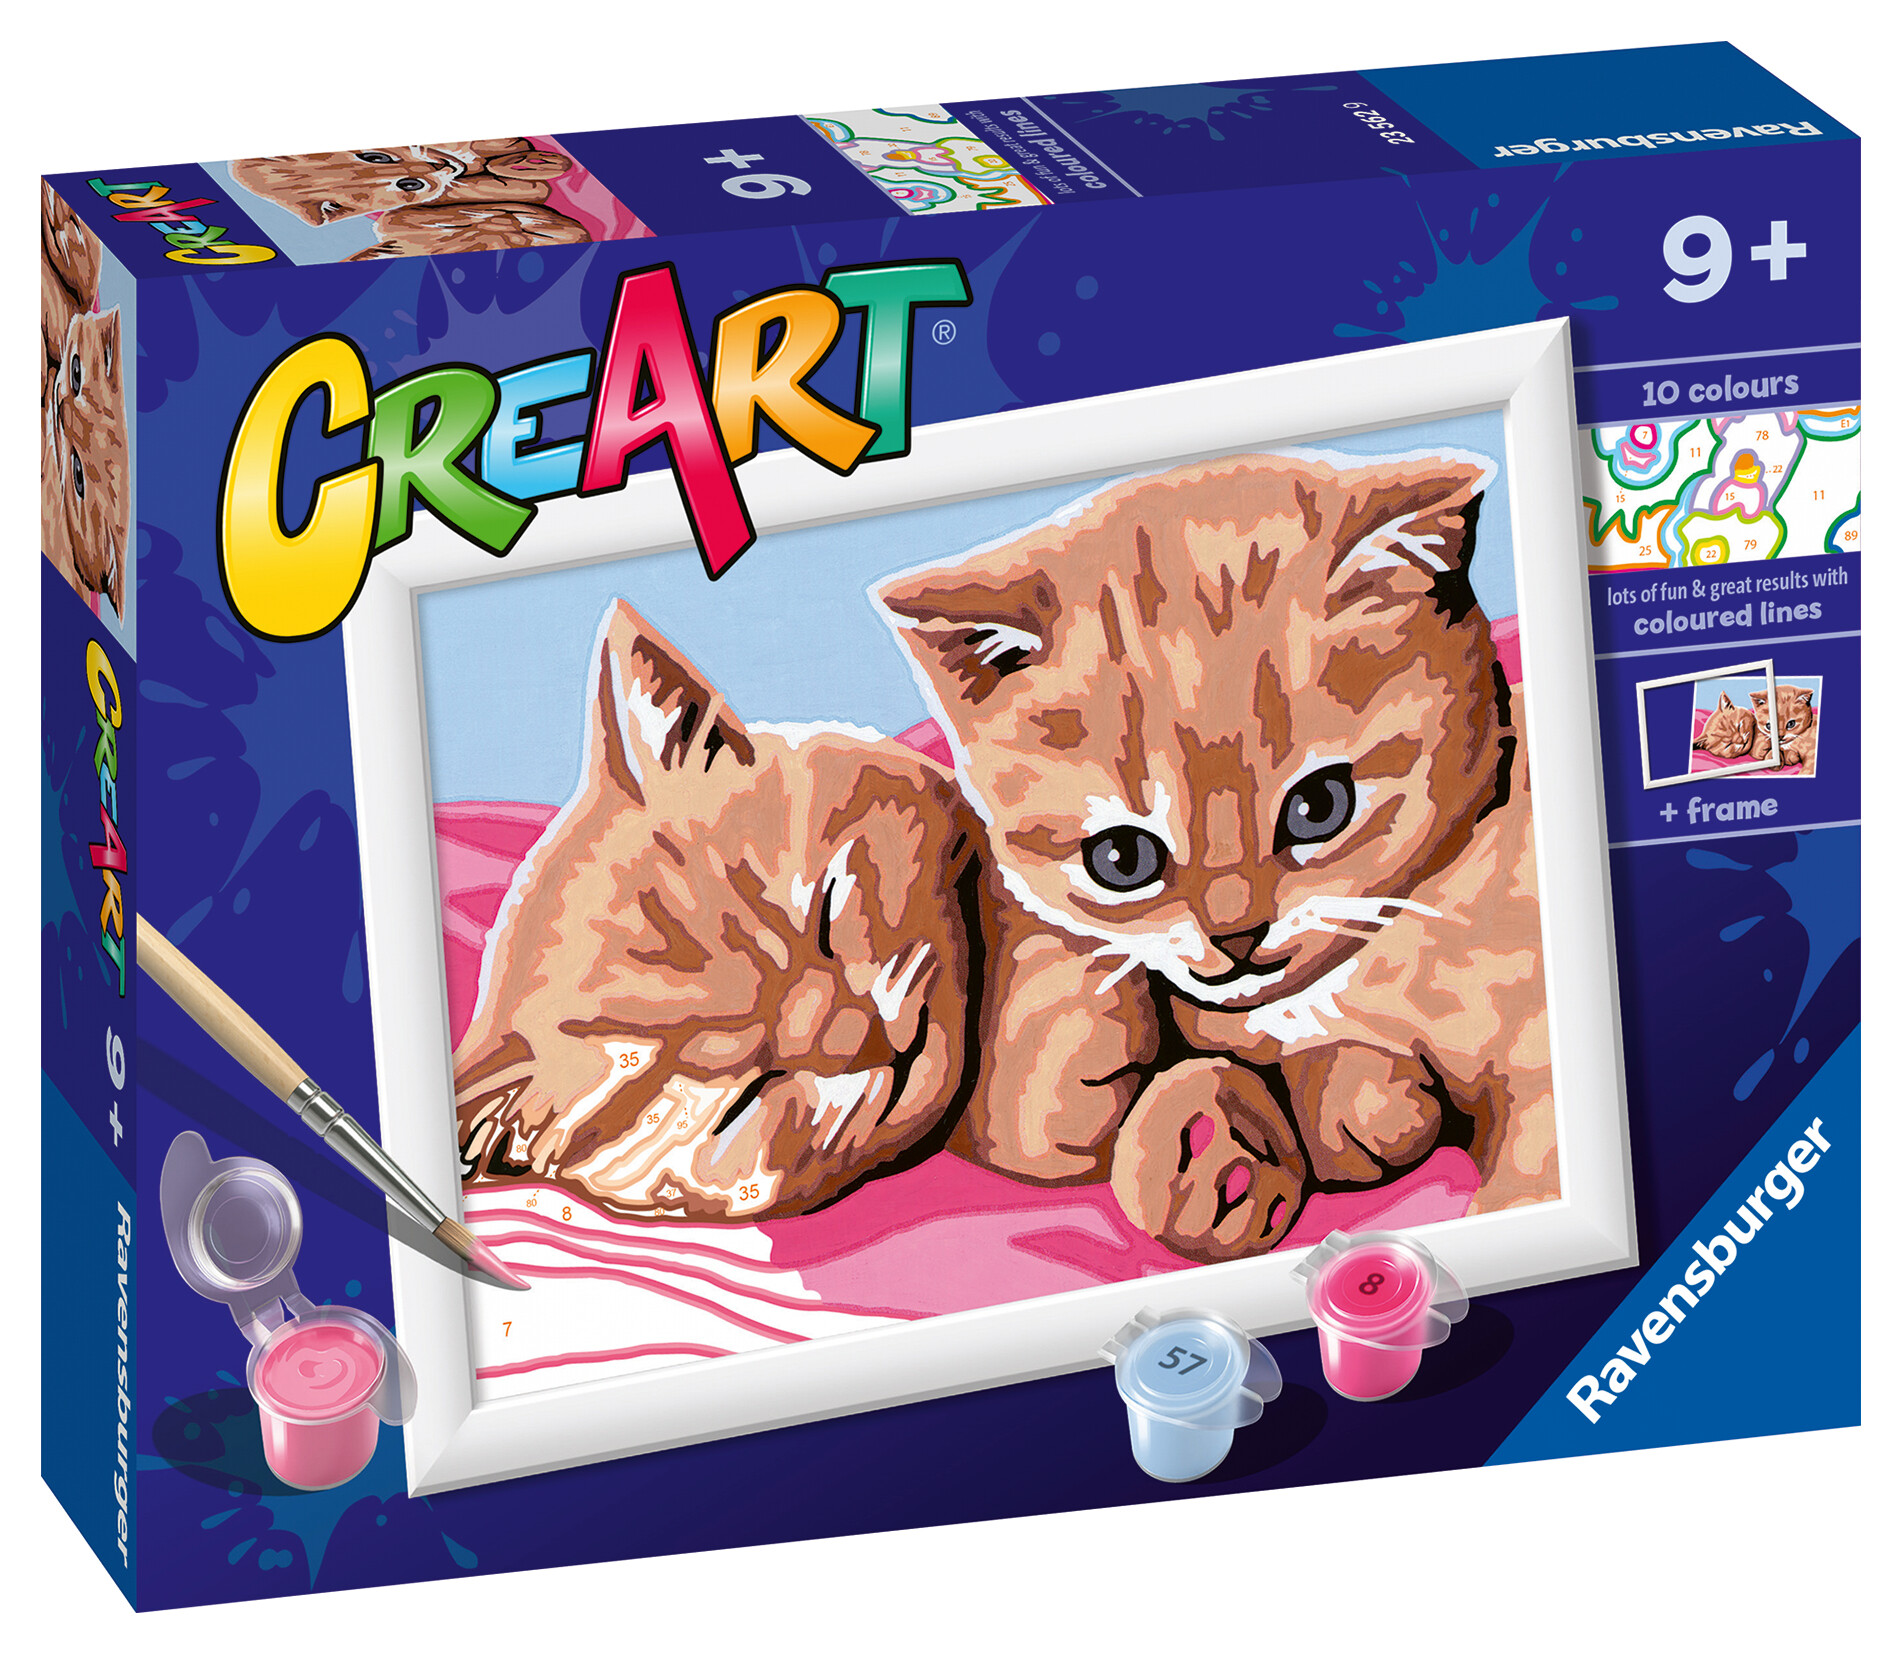 Ravensburger - creart serie e: gattini rossi, kit per dipingere con i numeri, contiene una tavola prestampata, pennello, colori e accessori, gioco creativo per bambini 9+ anni - CREART